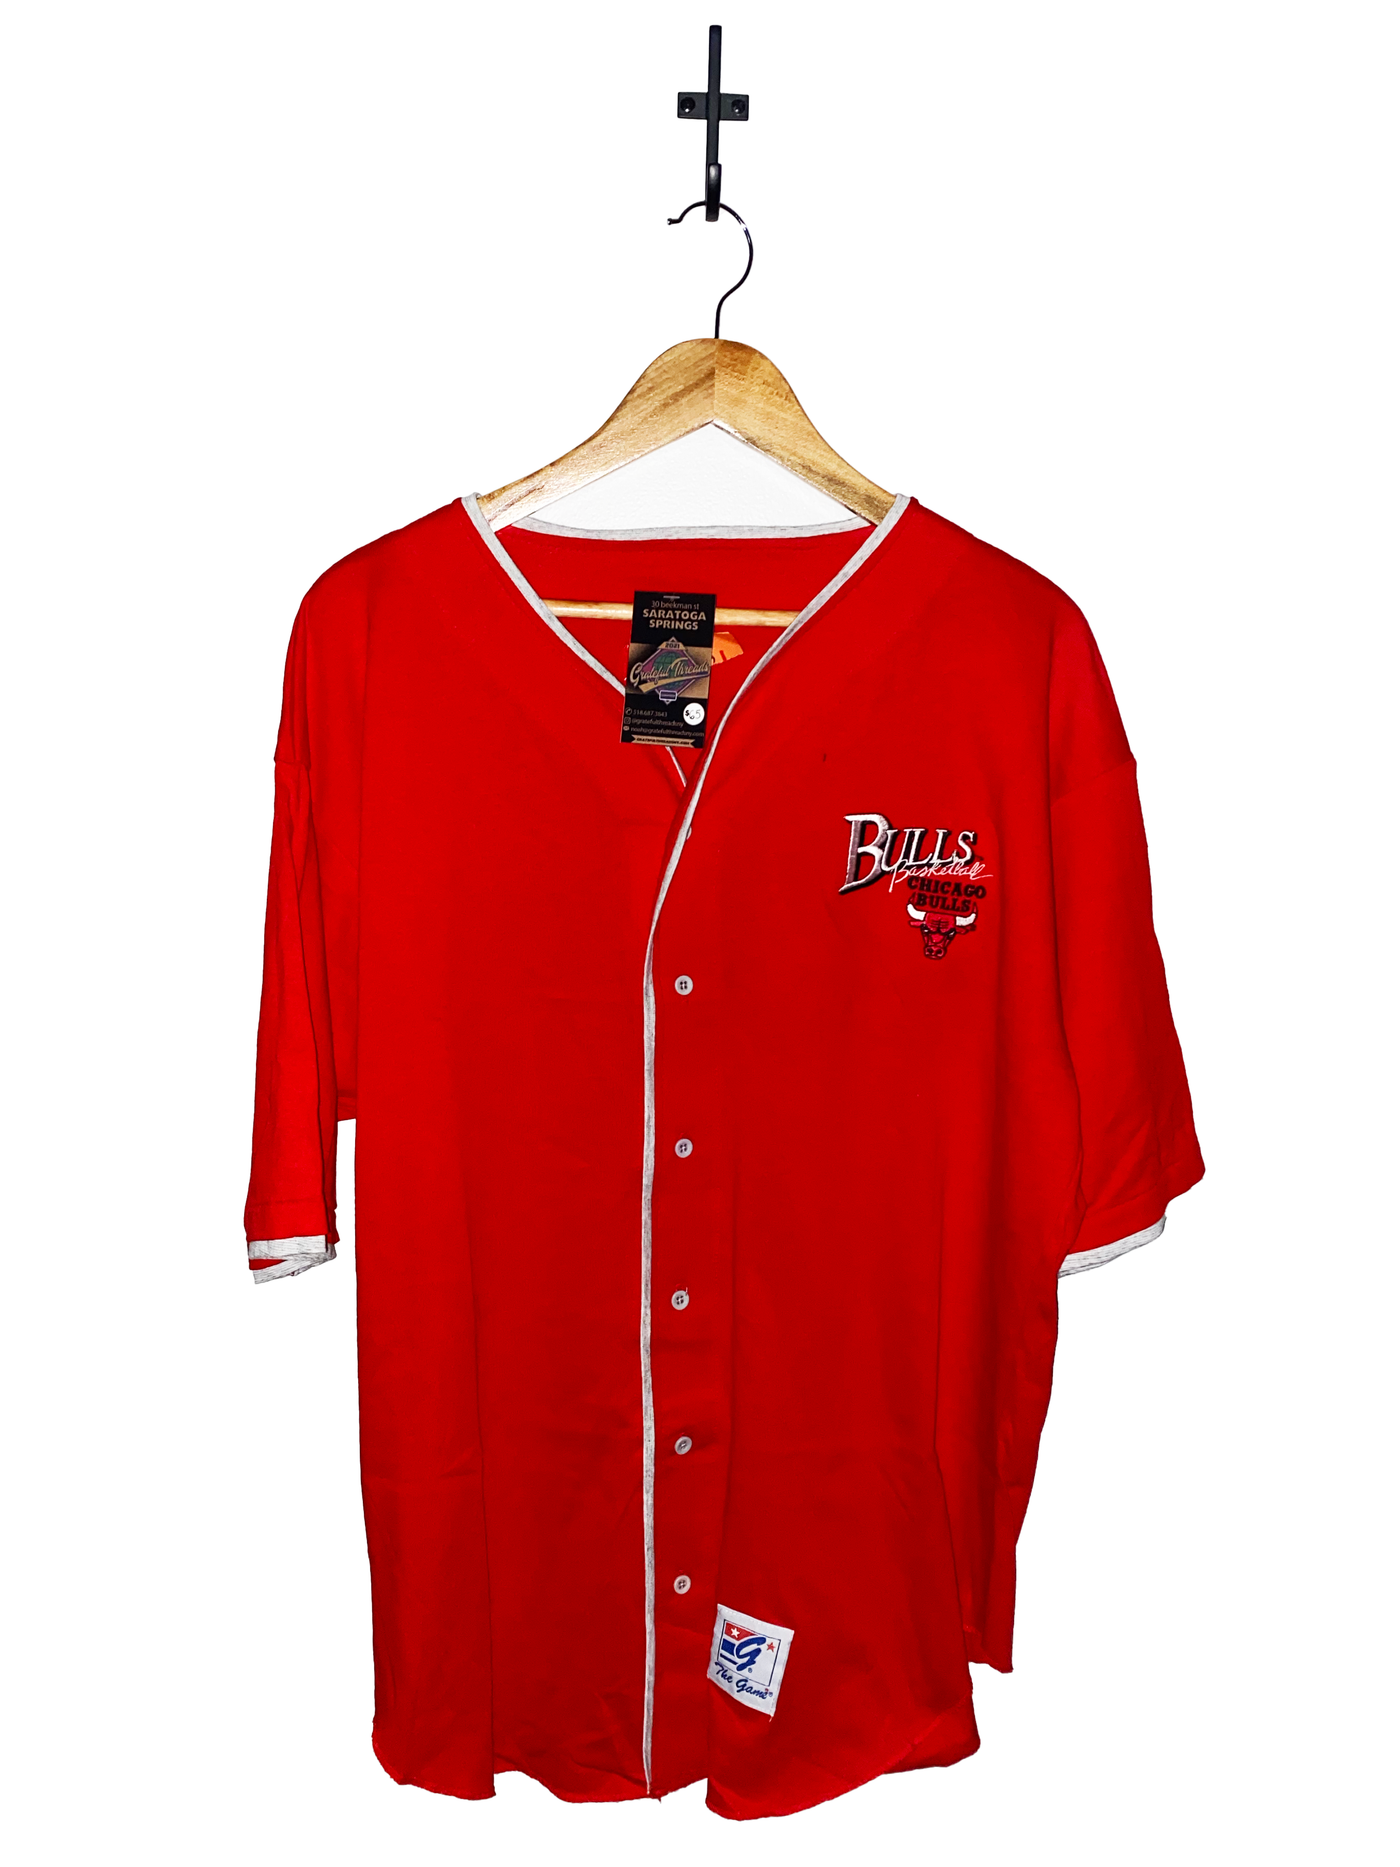 Vintage Gear Sportswear Chicago Bulls Baseball Style Jersey